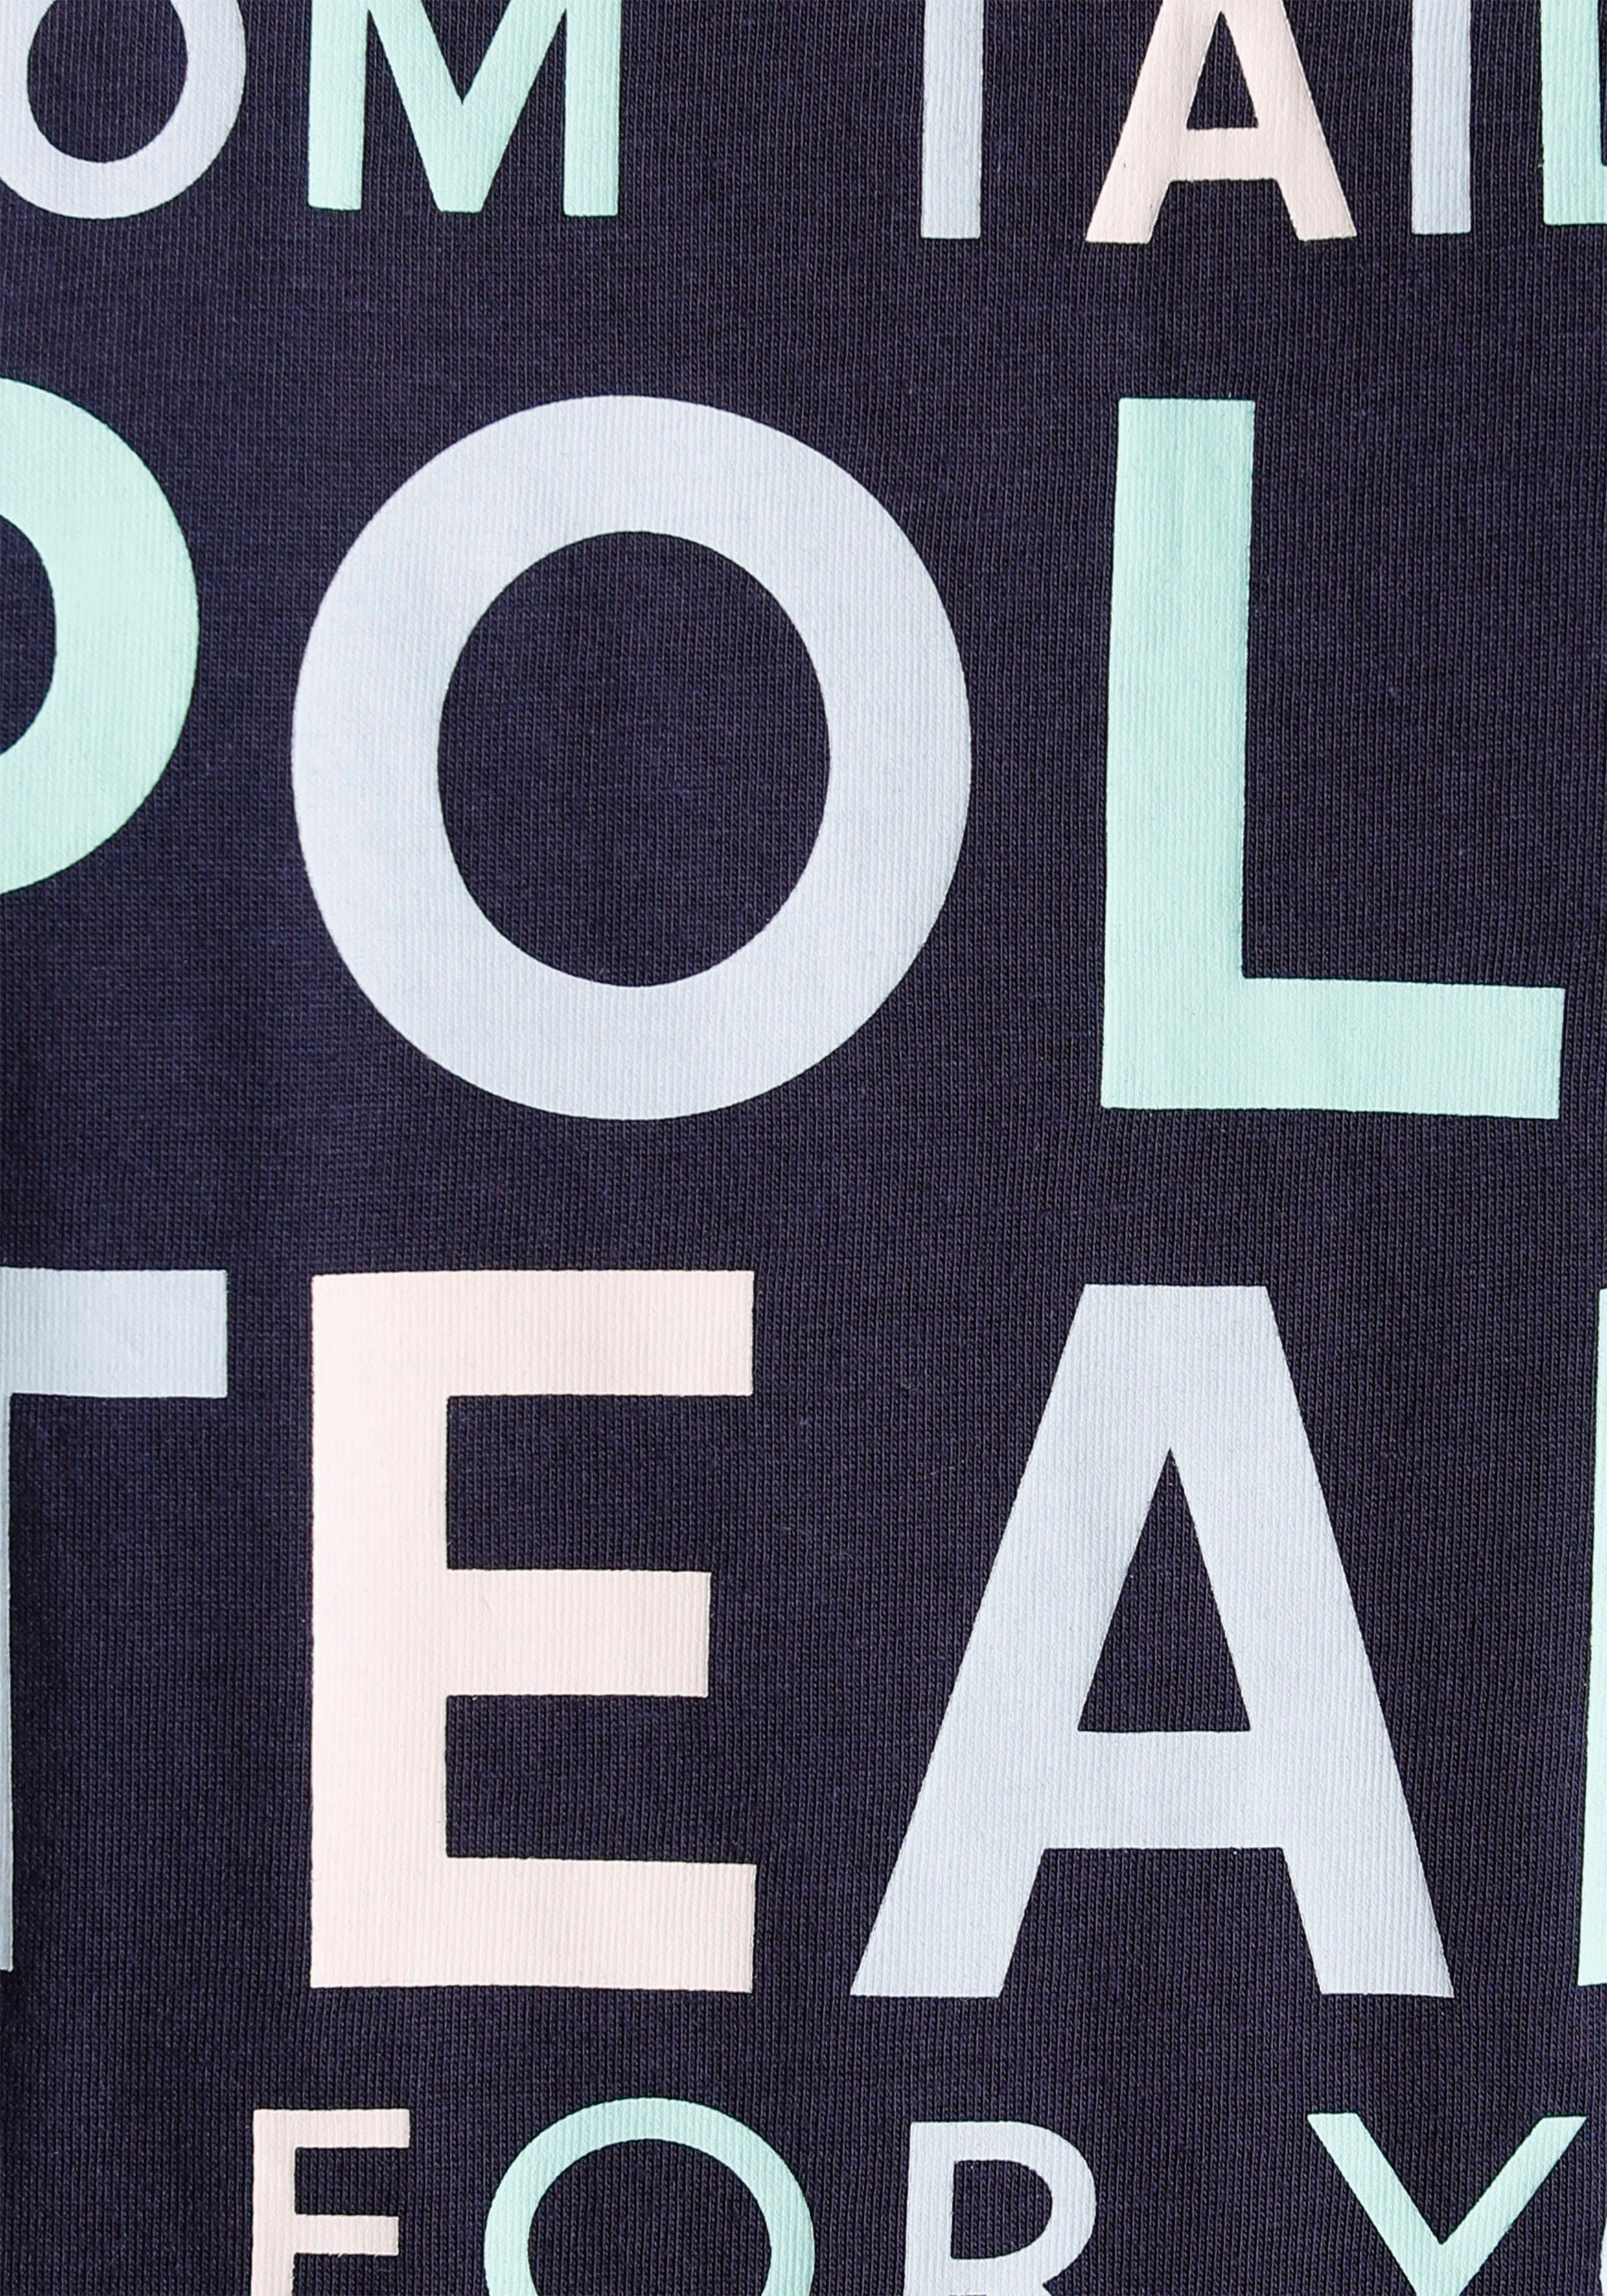 farbenfrohen Polo TOM großem TAILOR Logo-Print Print-Shirt Team